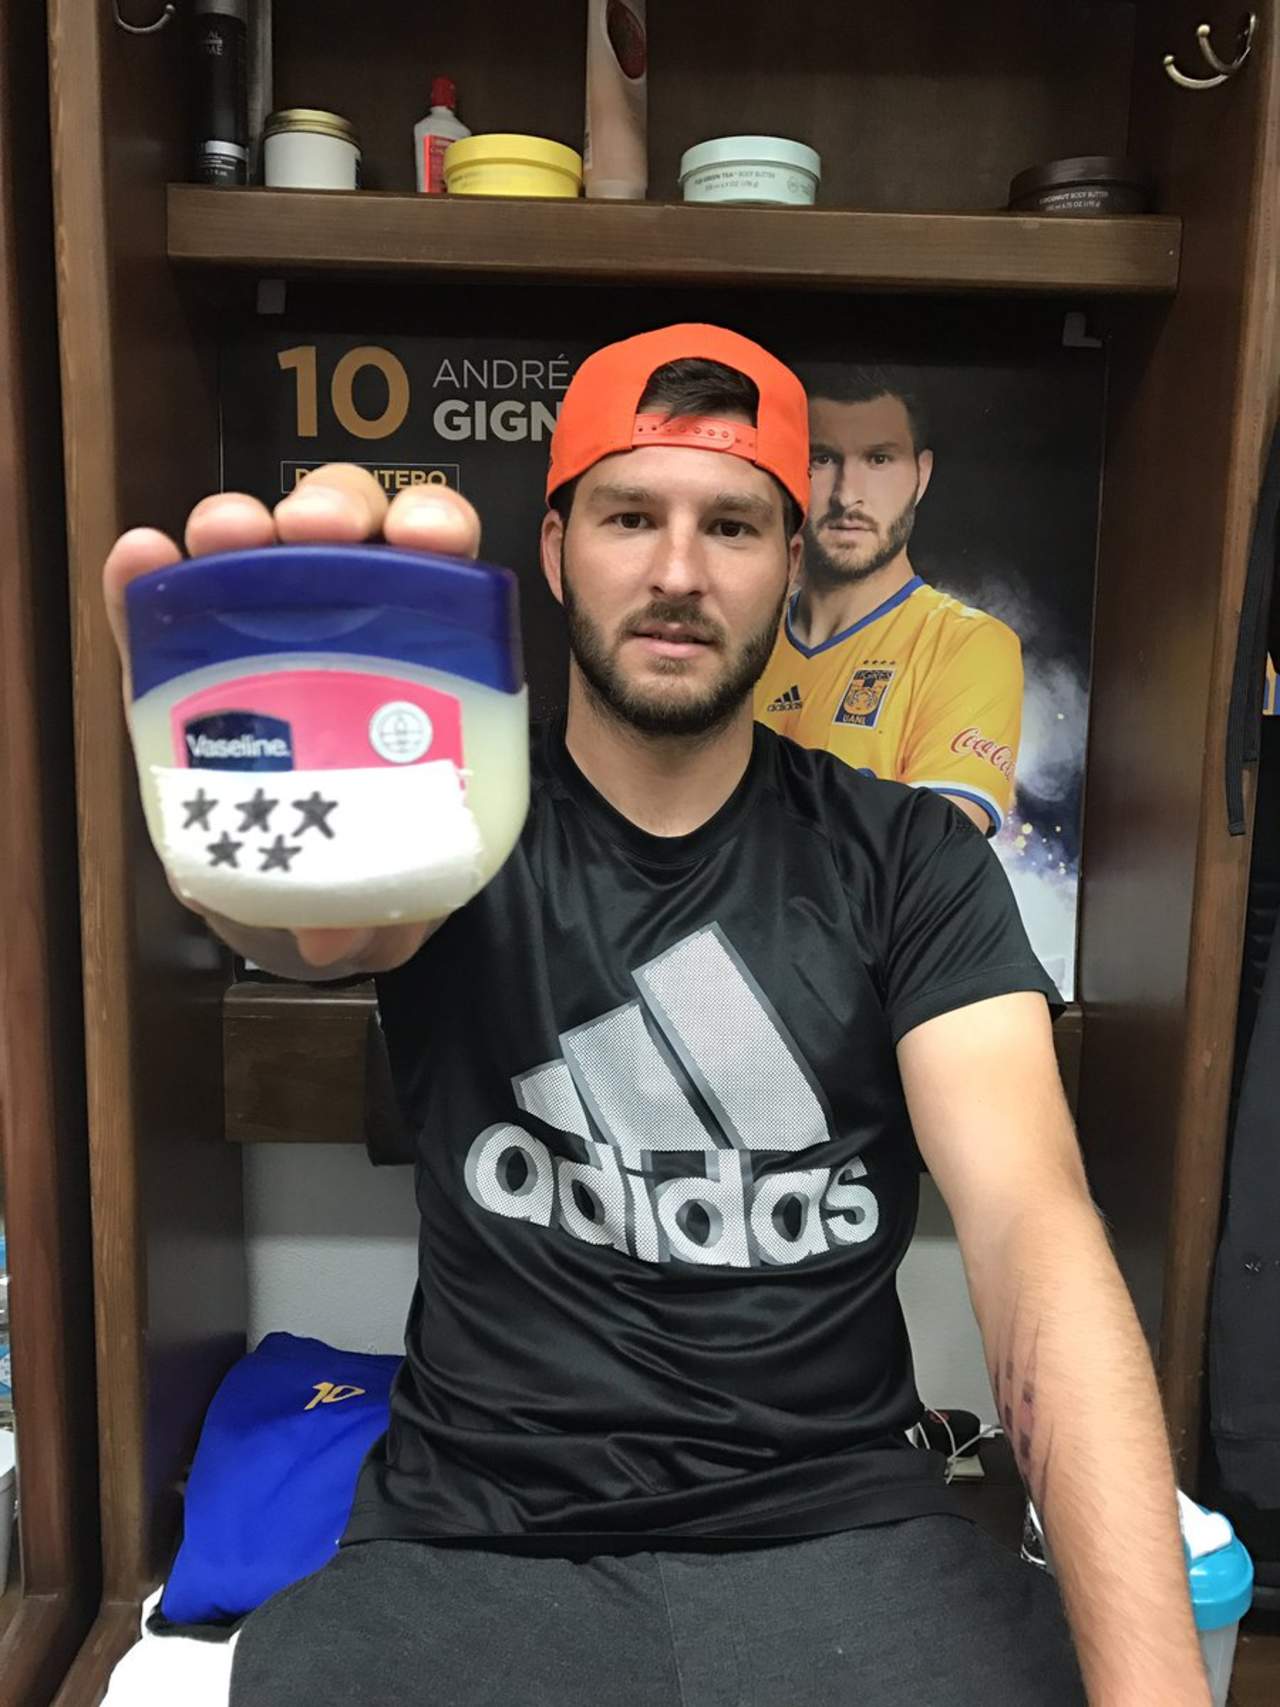 El delantero campeón del Apertura 2016 respondió a modo de burla sosteniendo un envase de vaselina con una etiqueta pegada que tiene cinco estrellas.